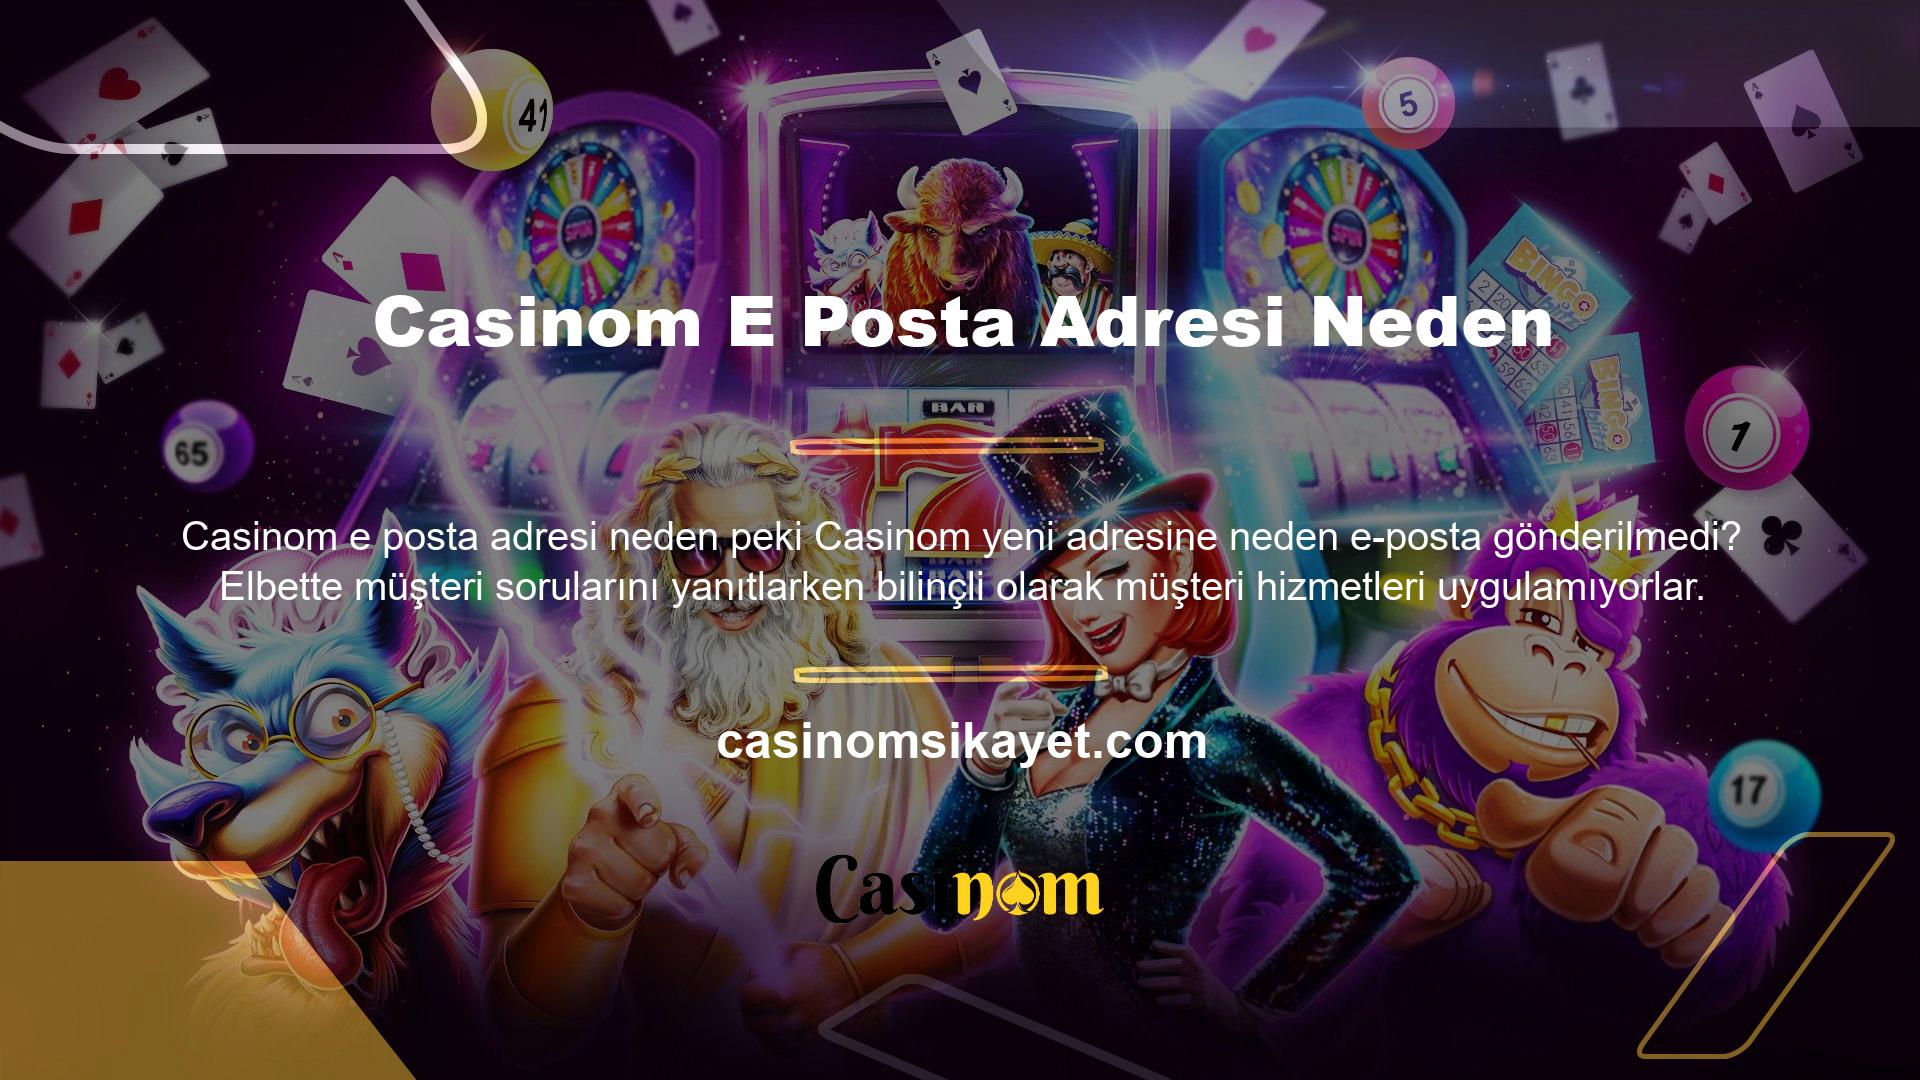 Casinom web sitesinin en büyük özelliklerinden biri, kullanıcı hizmetlerine verdiği değerdir